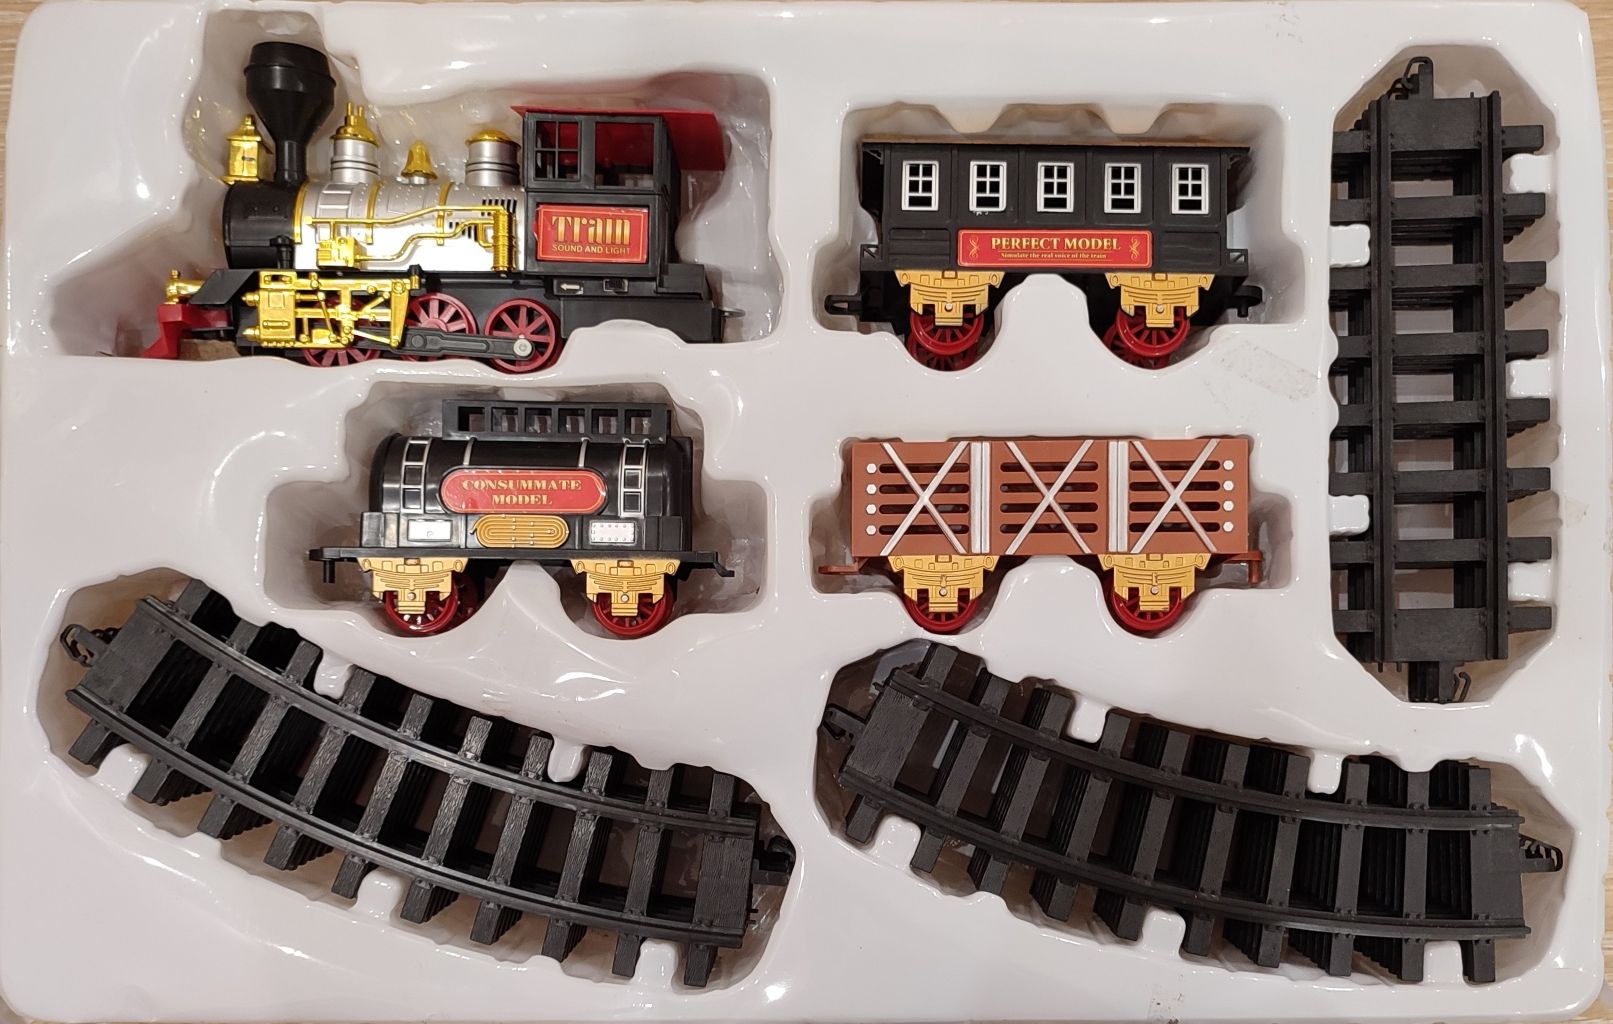 Classics Train set 20pcs / Классический игрушечный поезд